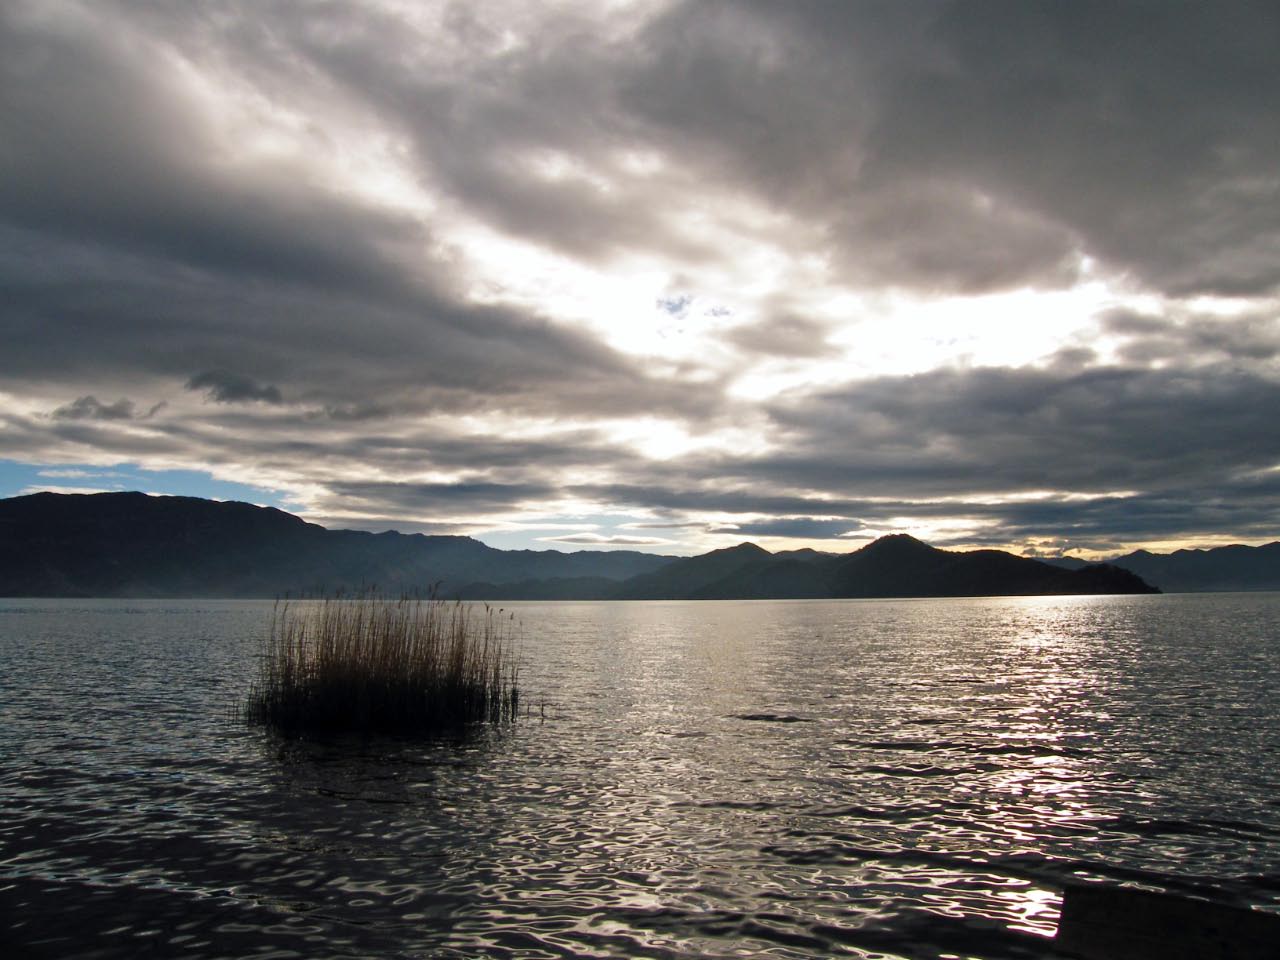 Autour du lac Lu Gu vievent les Mosuo. Le mode de vie matriarcal à fait la réputation de ce groupe ethnique appartenant aux Naxi